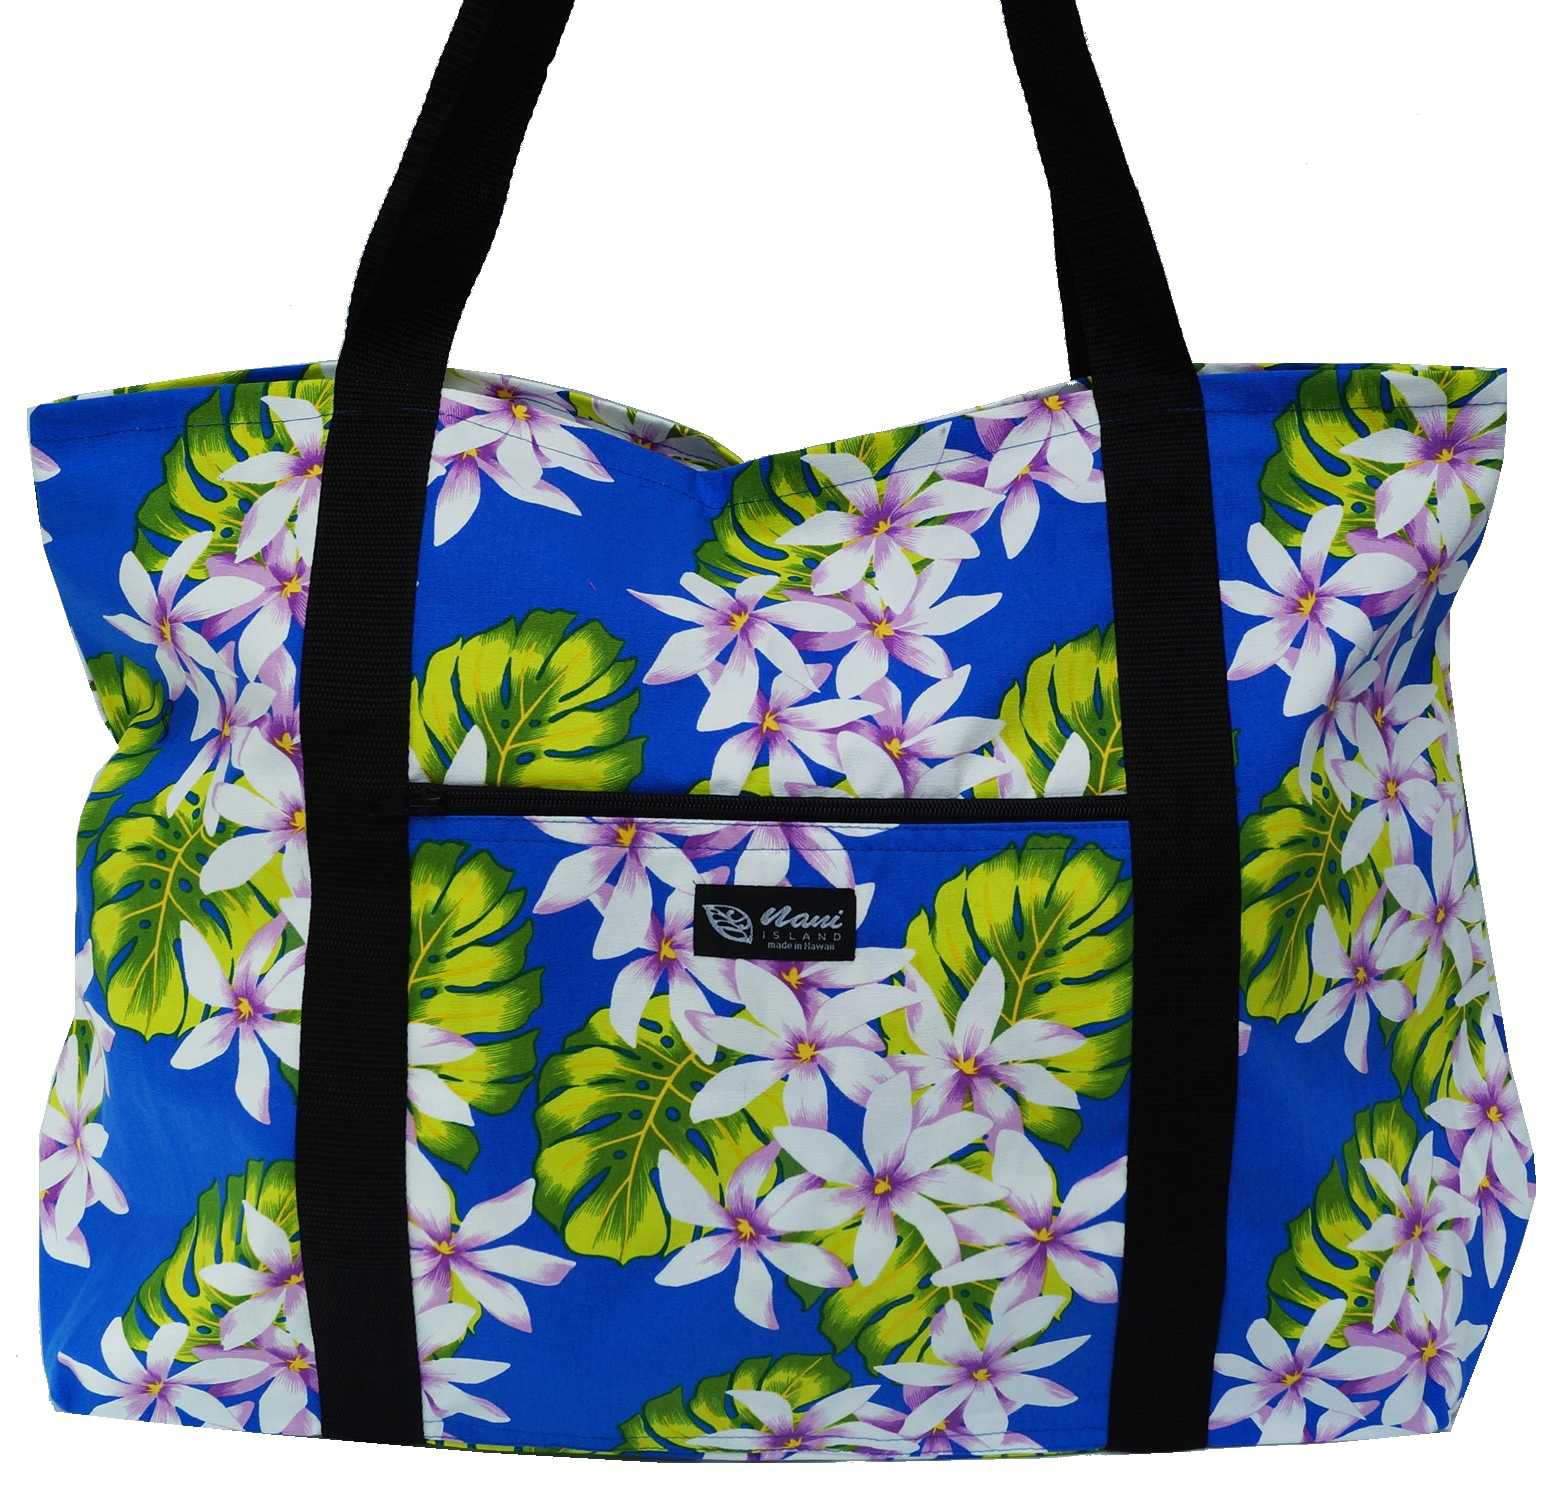 Sac cabas made in Hawaï. Un sac fun aux couleurs hawaiennes. Fleurs de tiare .